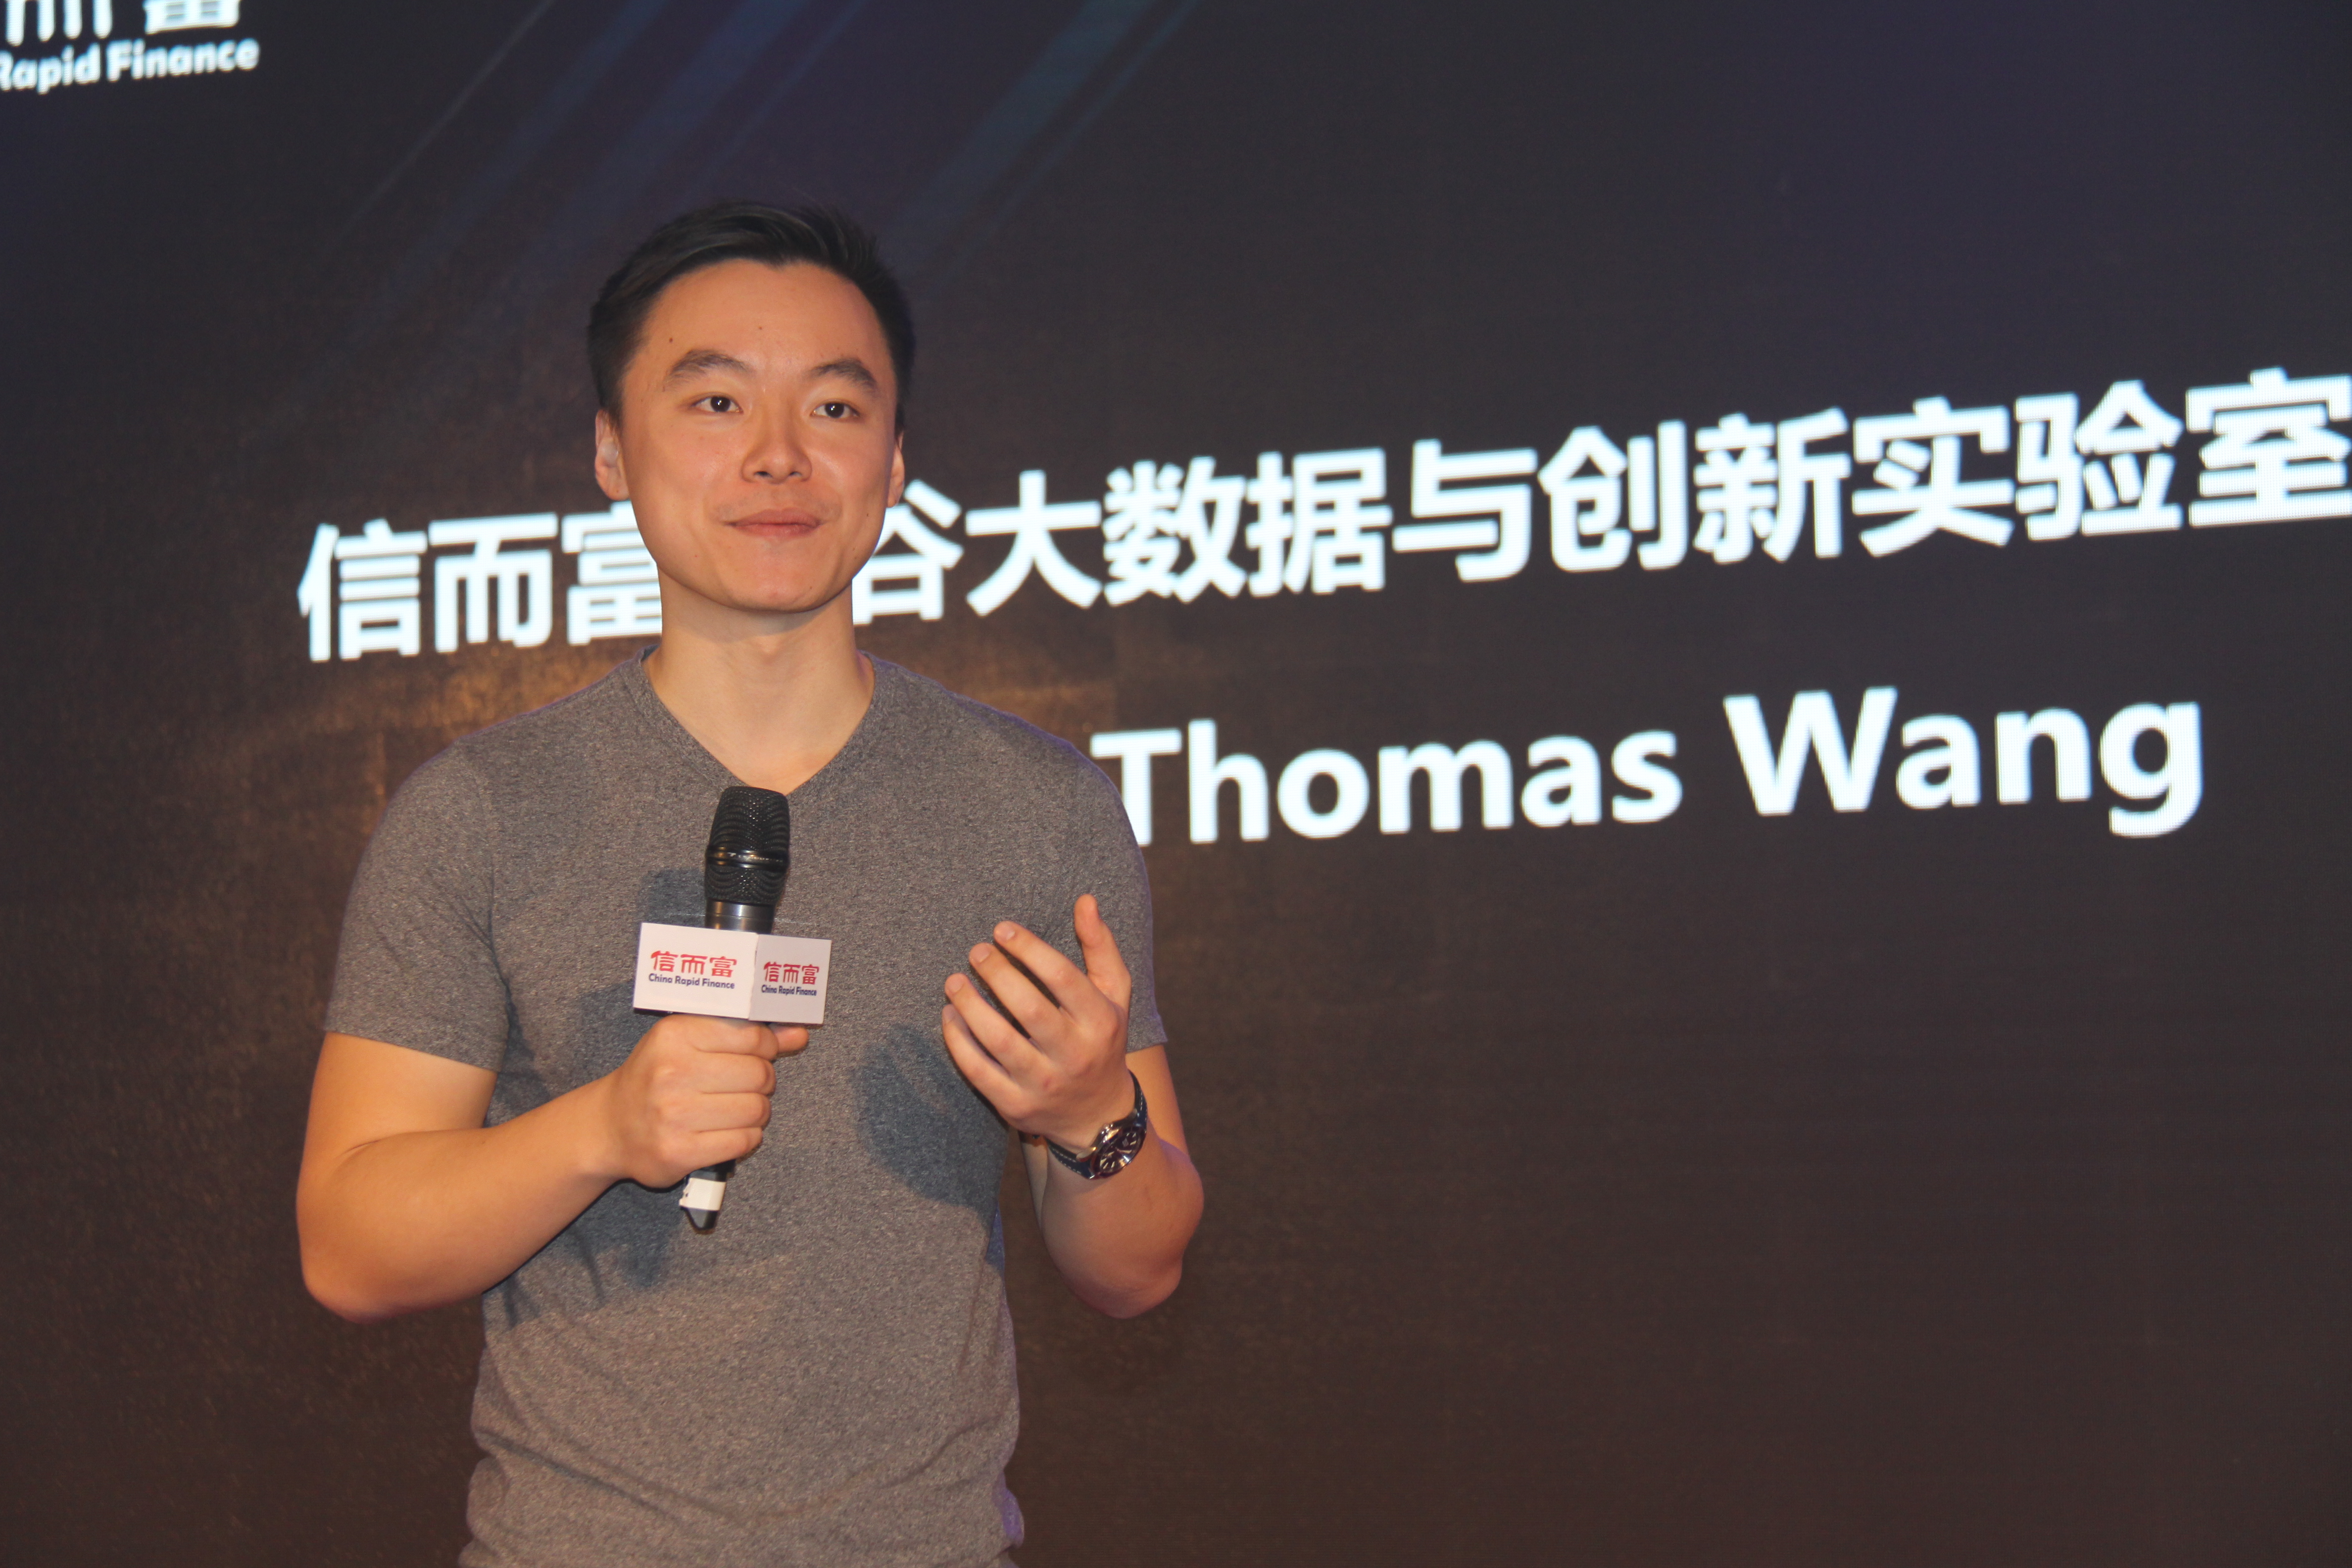 Thomas Wang